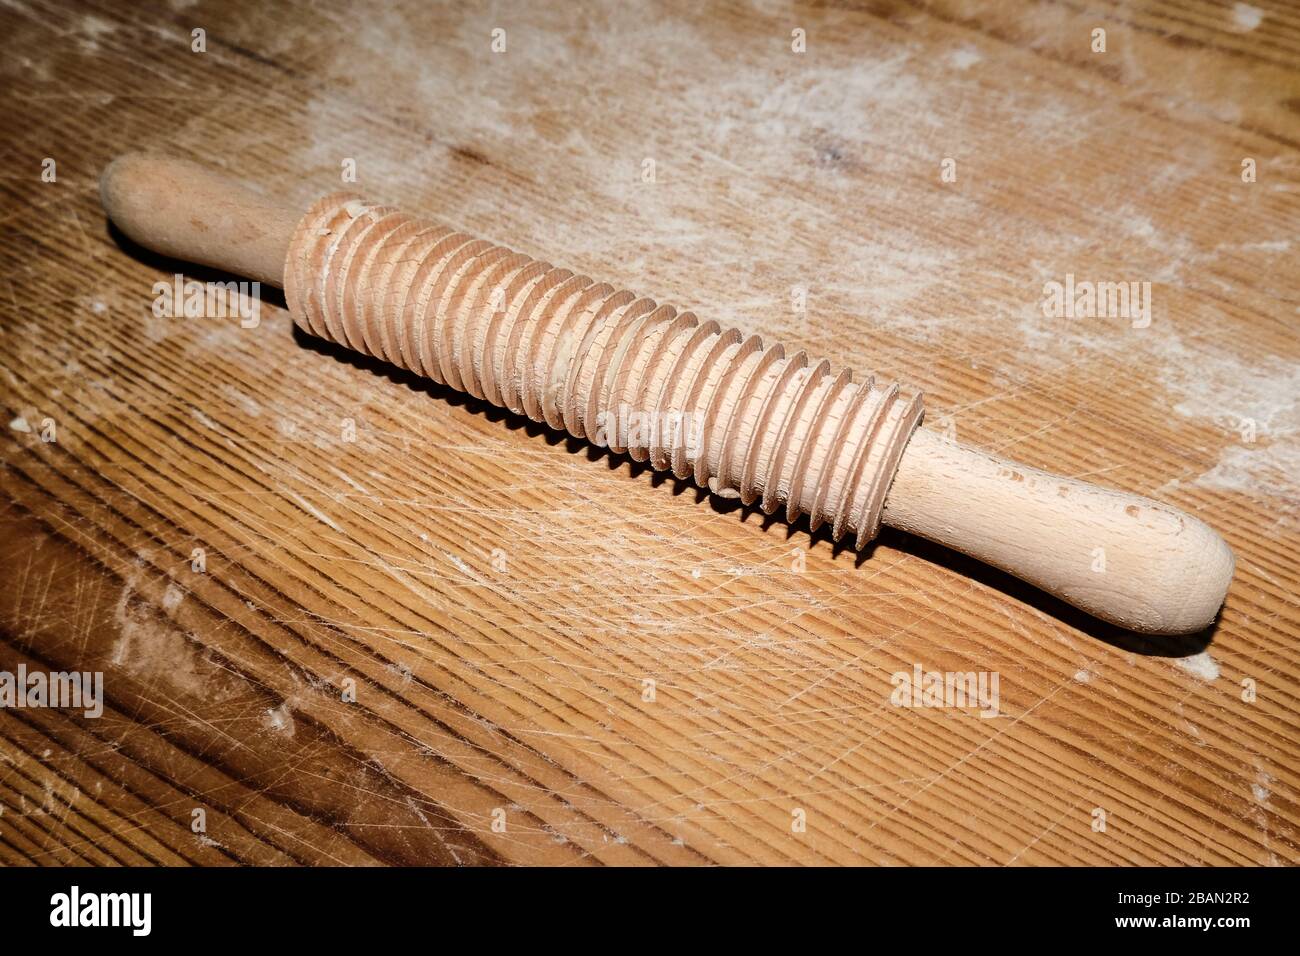 Pin isolato in legno con striature su tavolo in legno, articoli da cucina fatti in casa Foto Stock